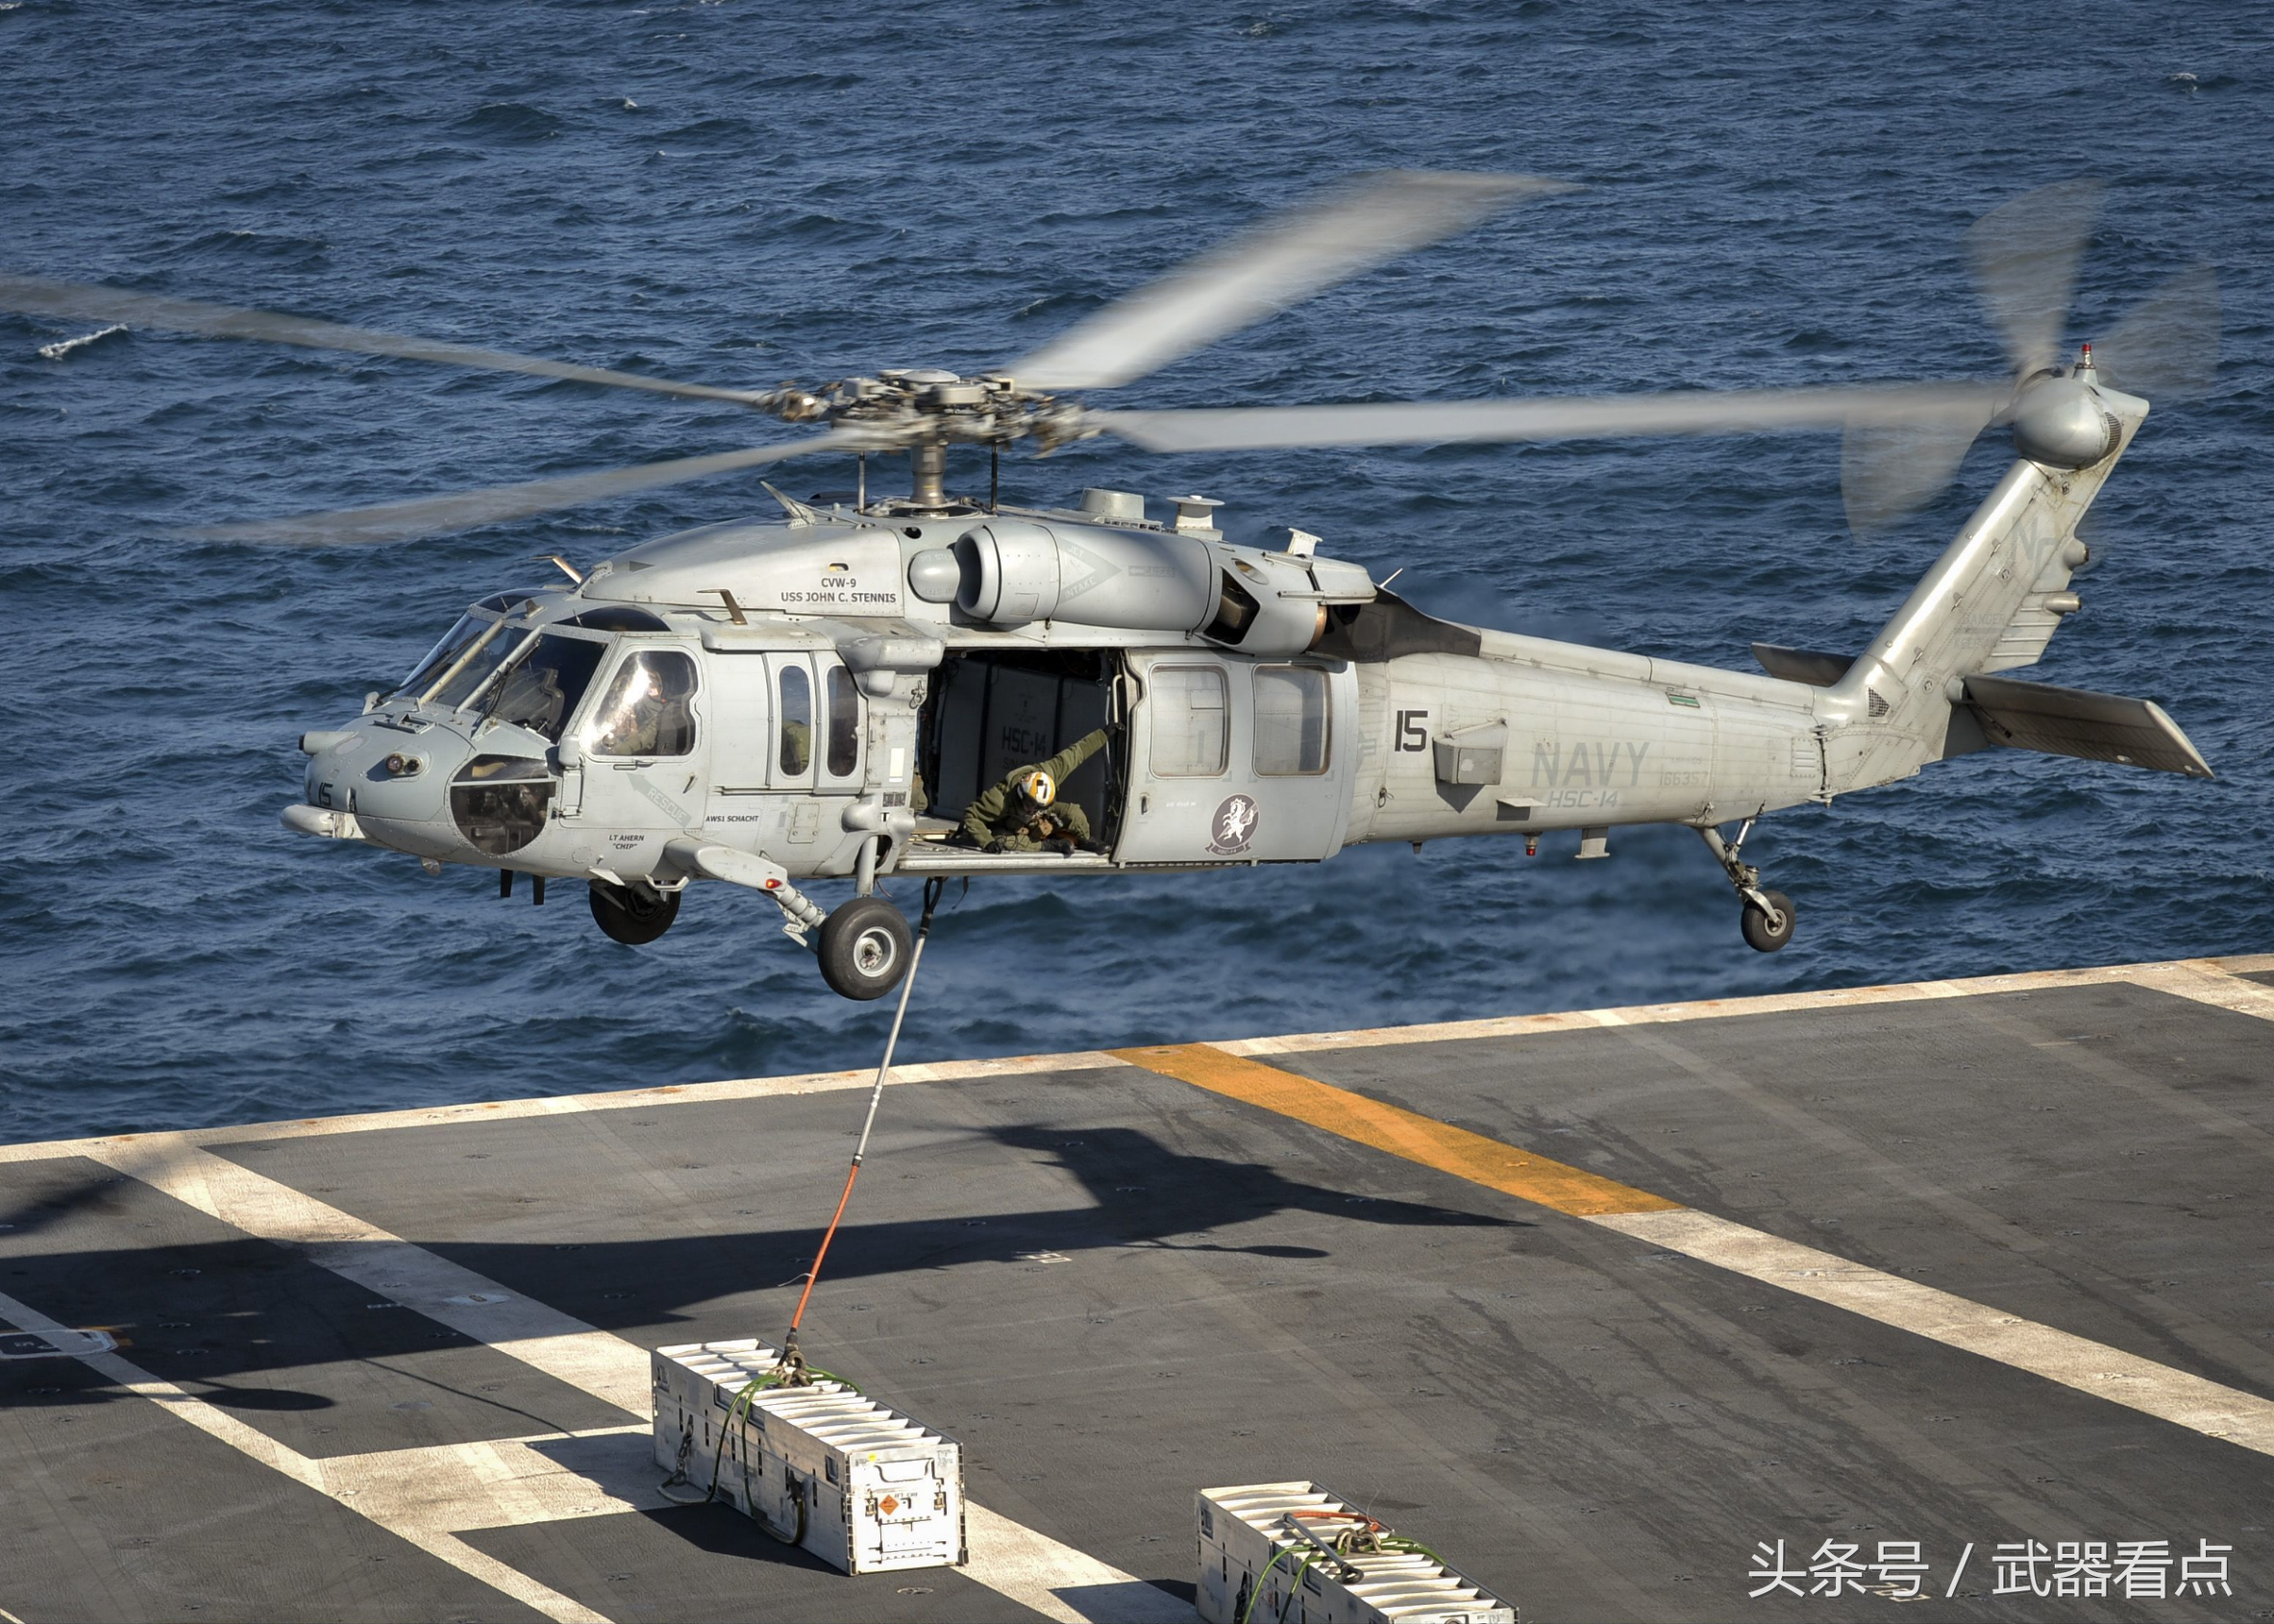 美国海军使用的 sh-60 "海鹰" 舰载直升机